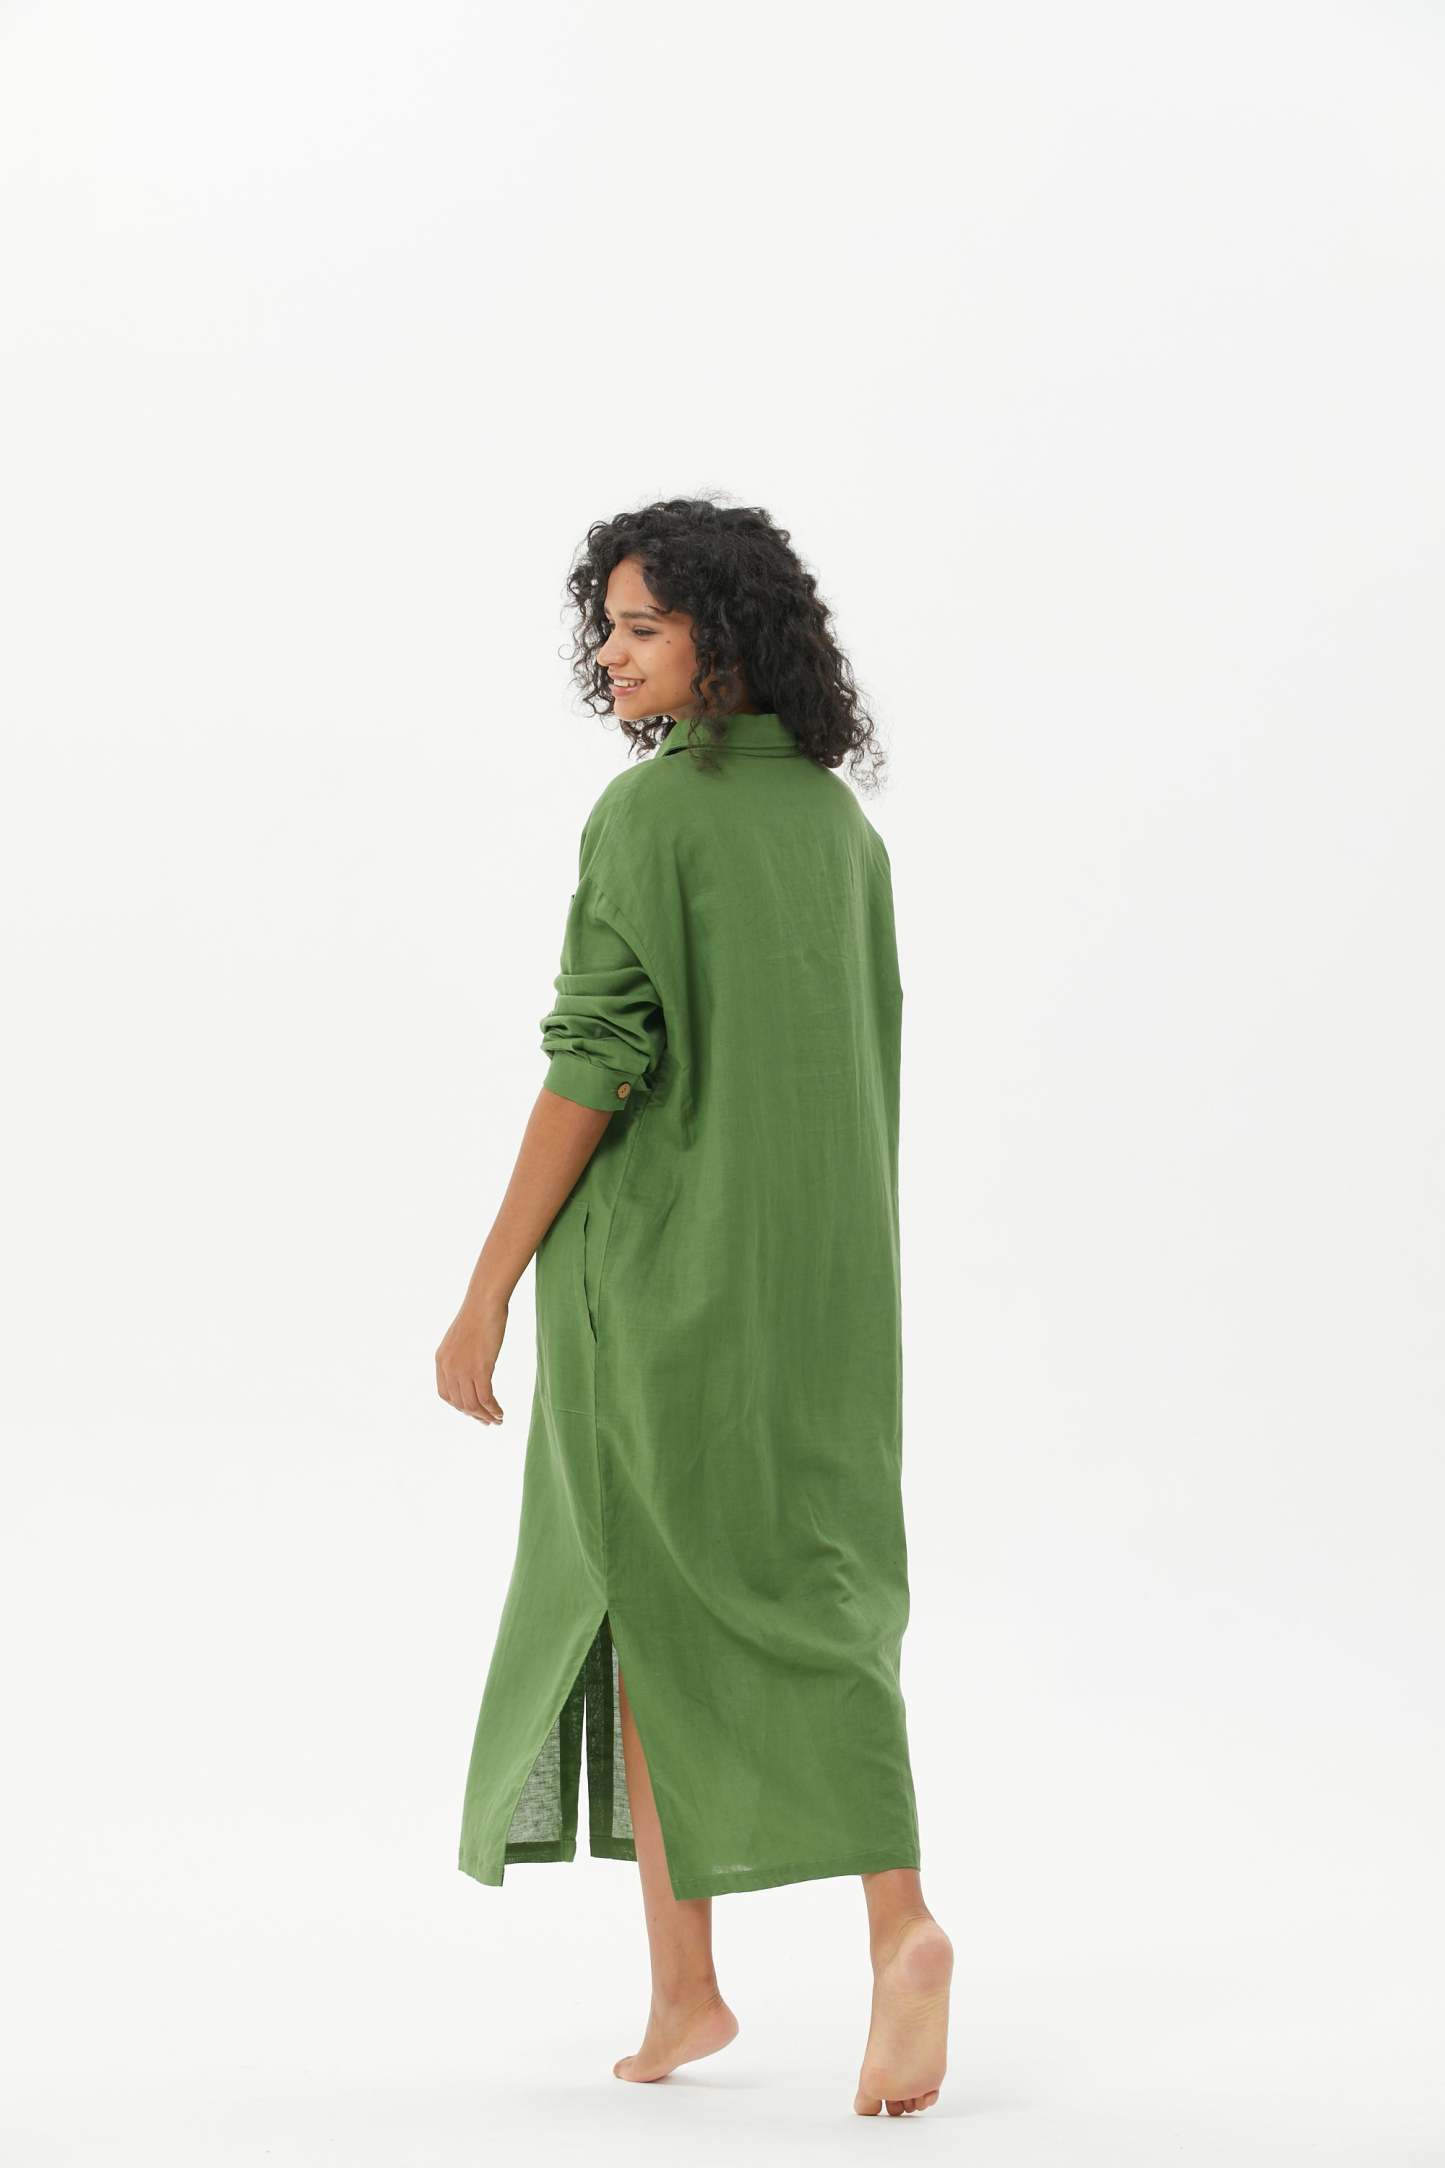 COZINEN Women's Casual lapel pocket solid color split shirt dress